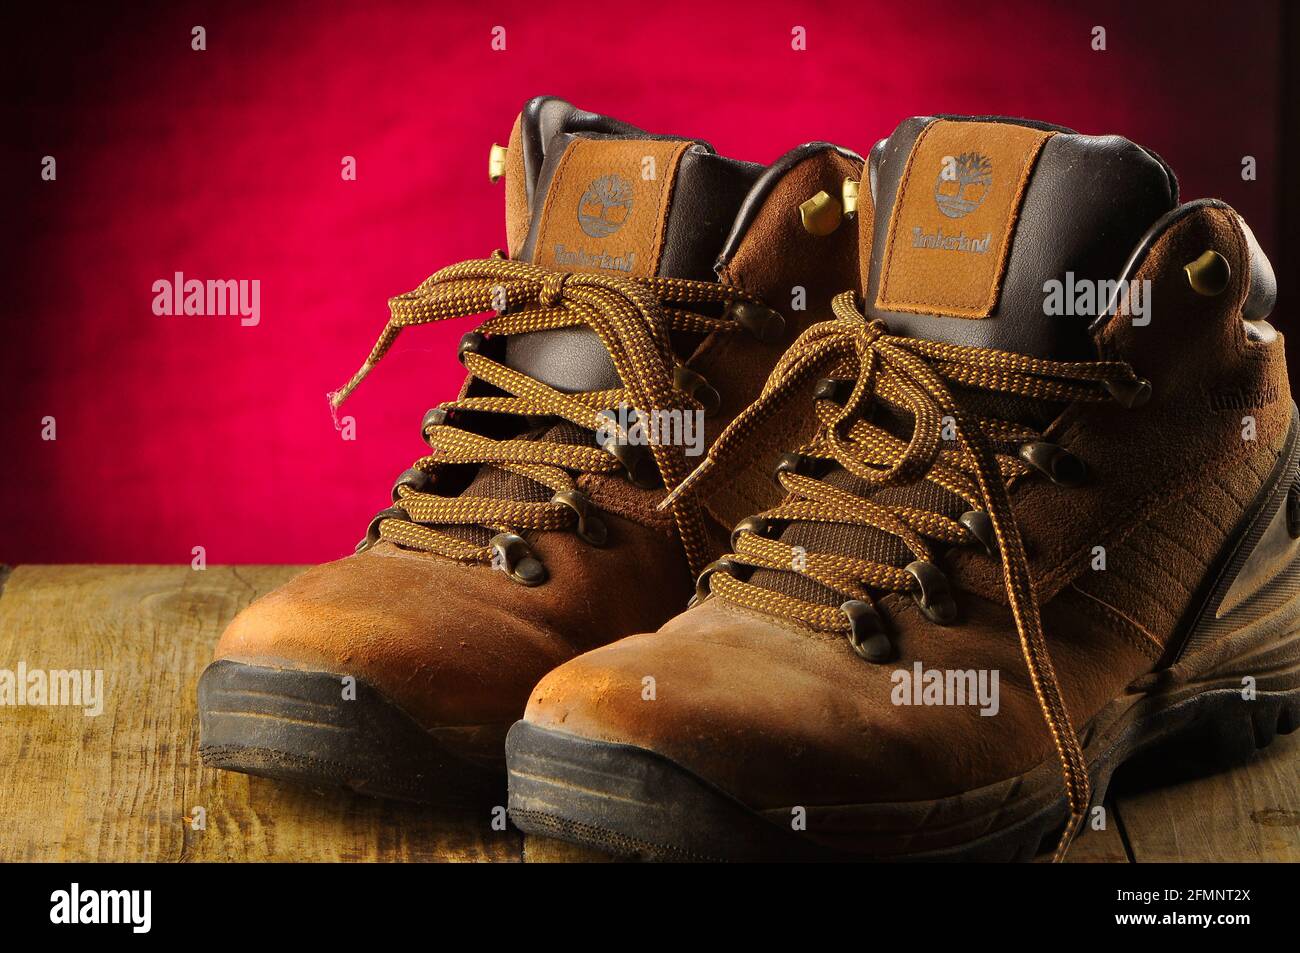 Timberland hiking boots Stock Photo - Alamy